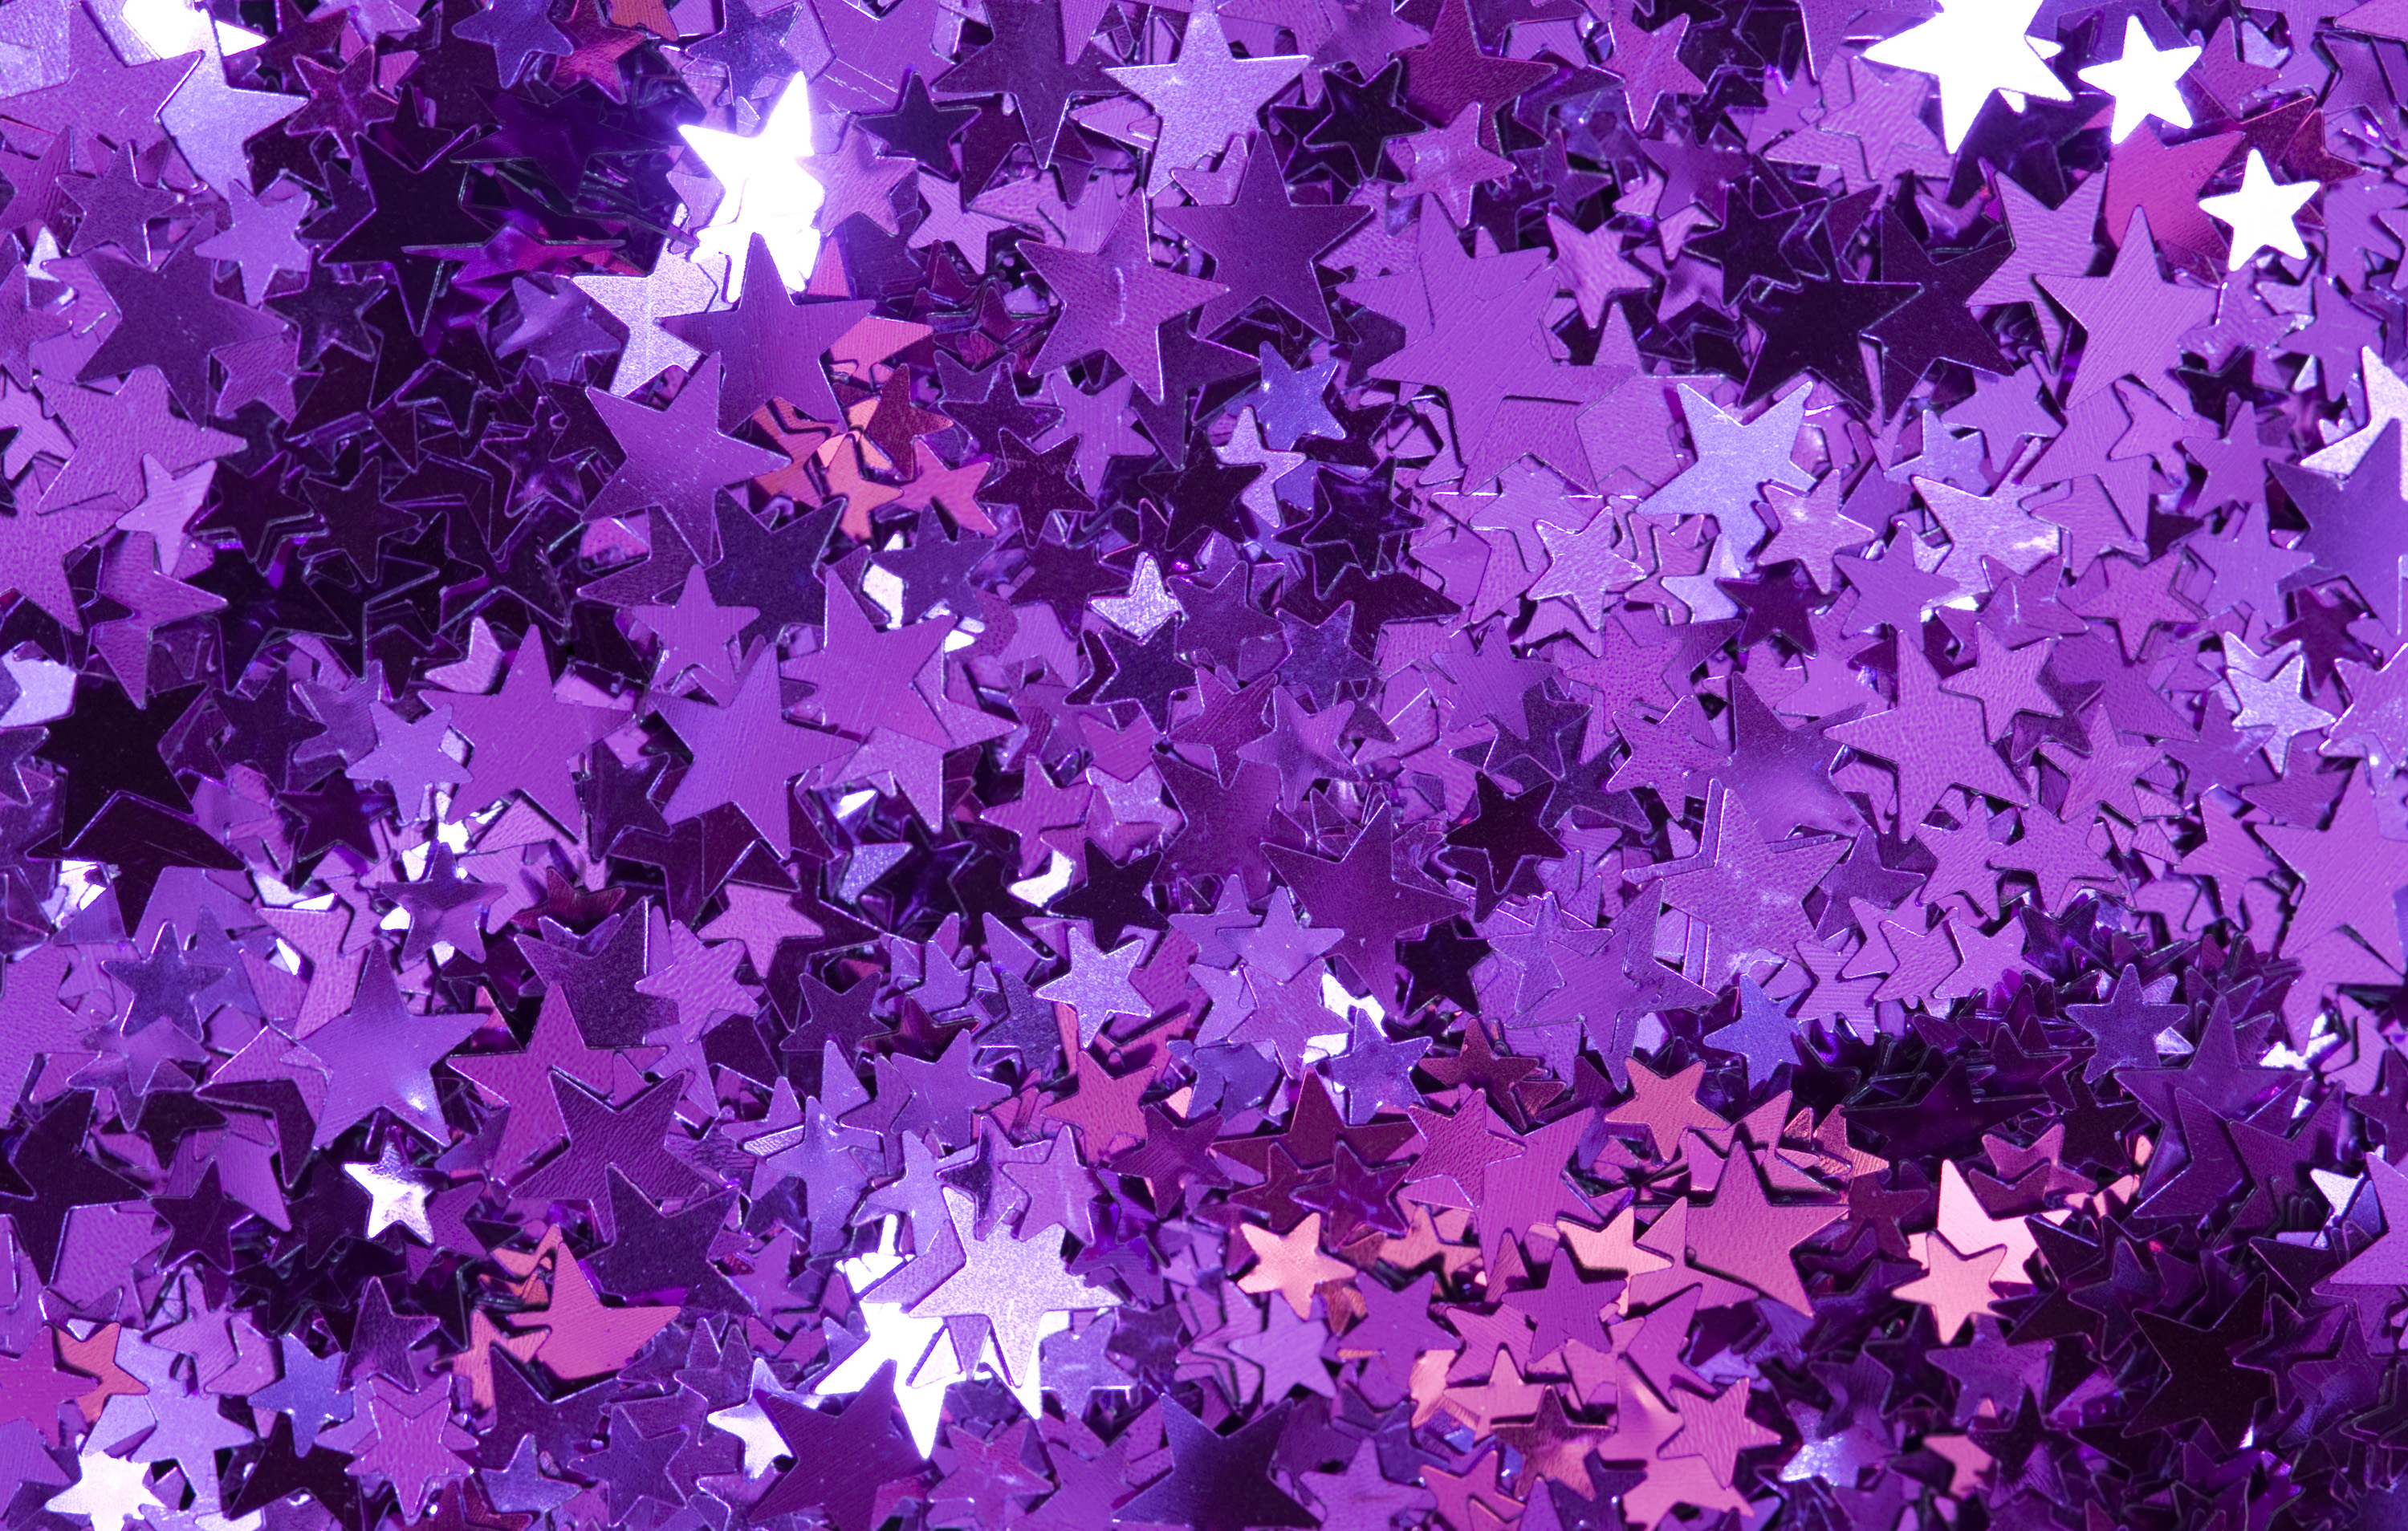 Download Original image of glitter star backdrop[2270kB